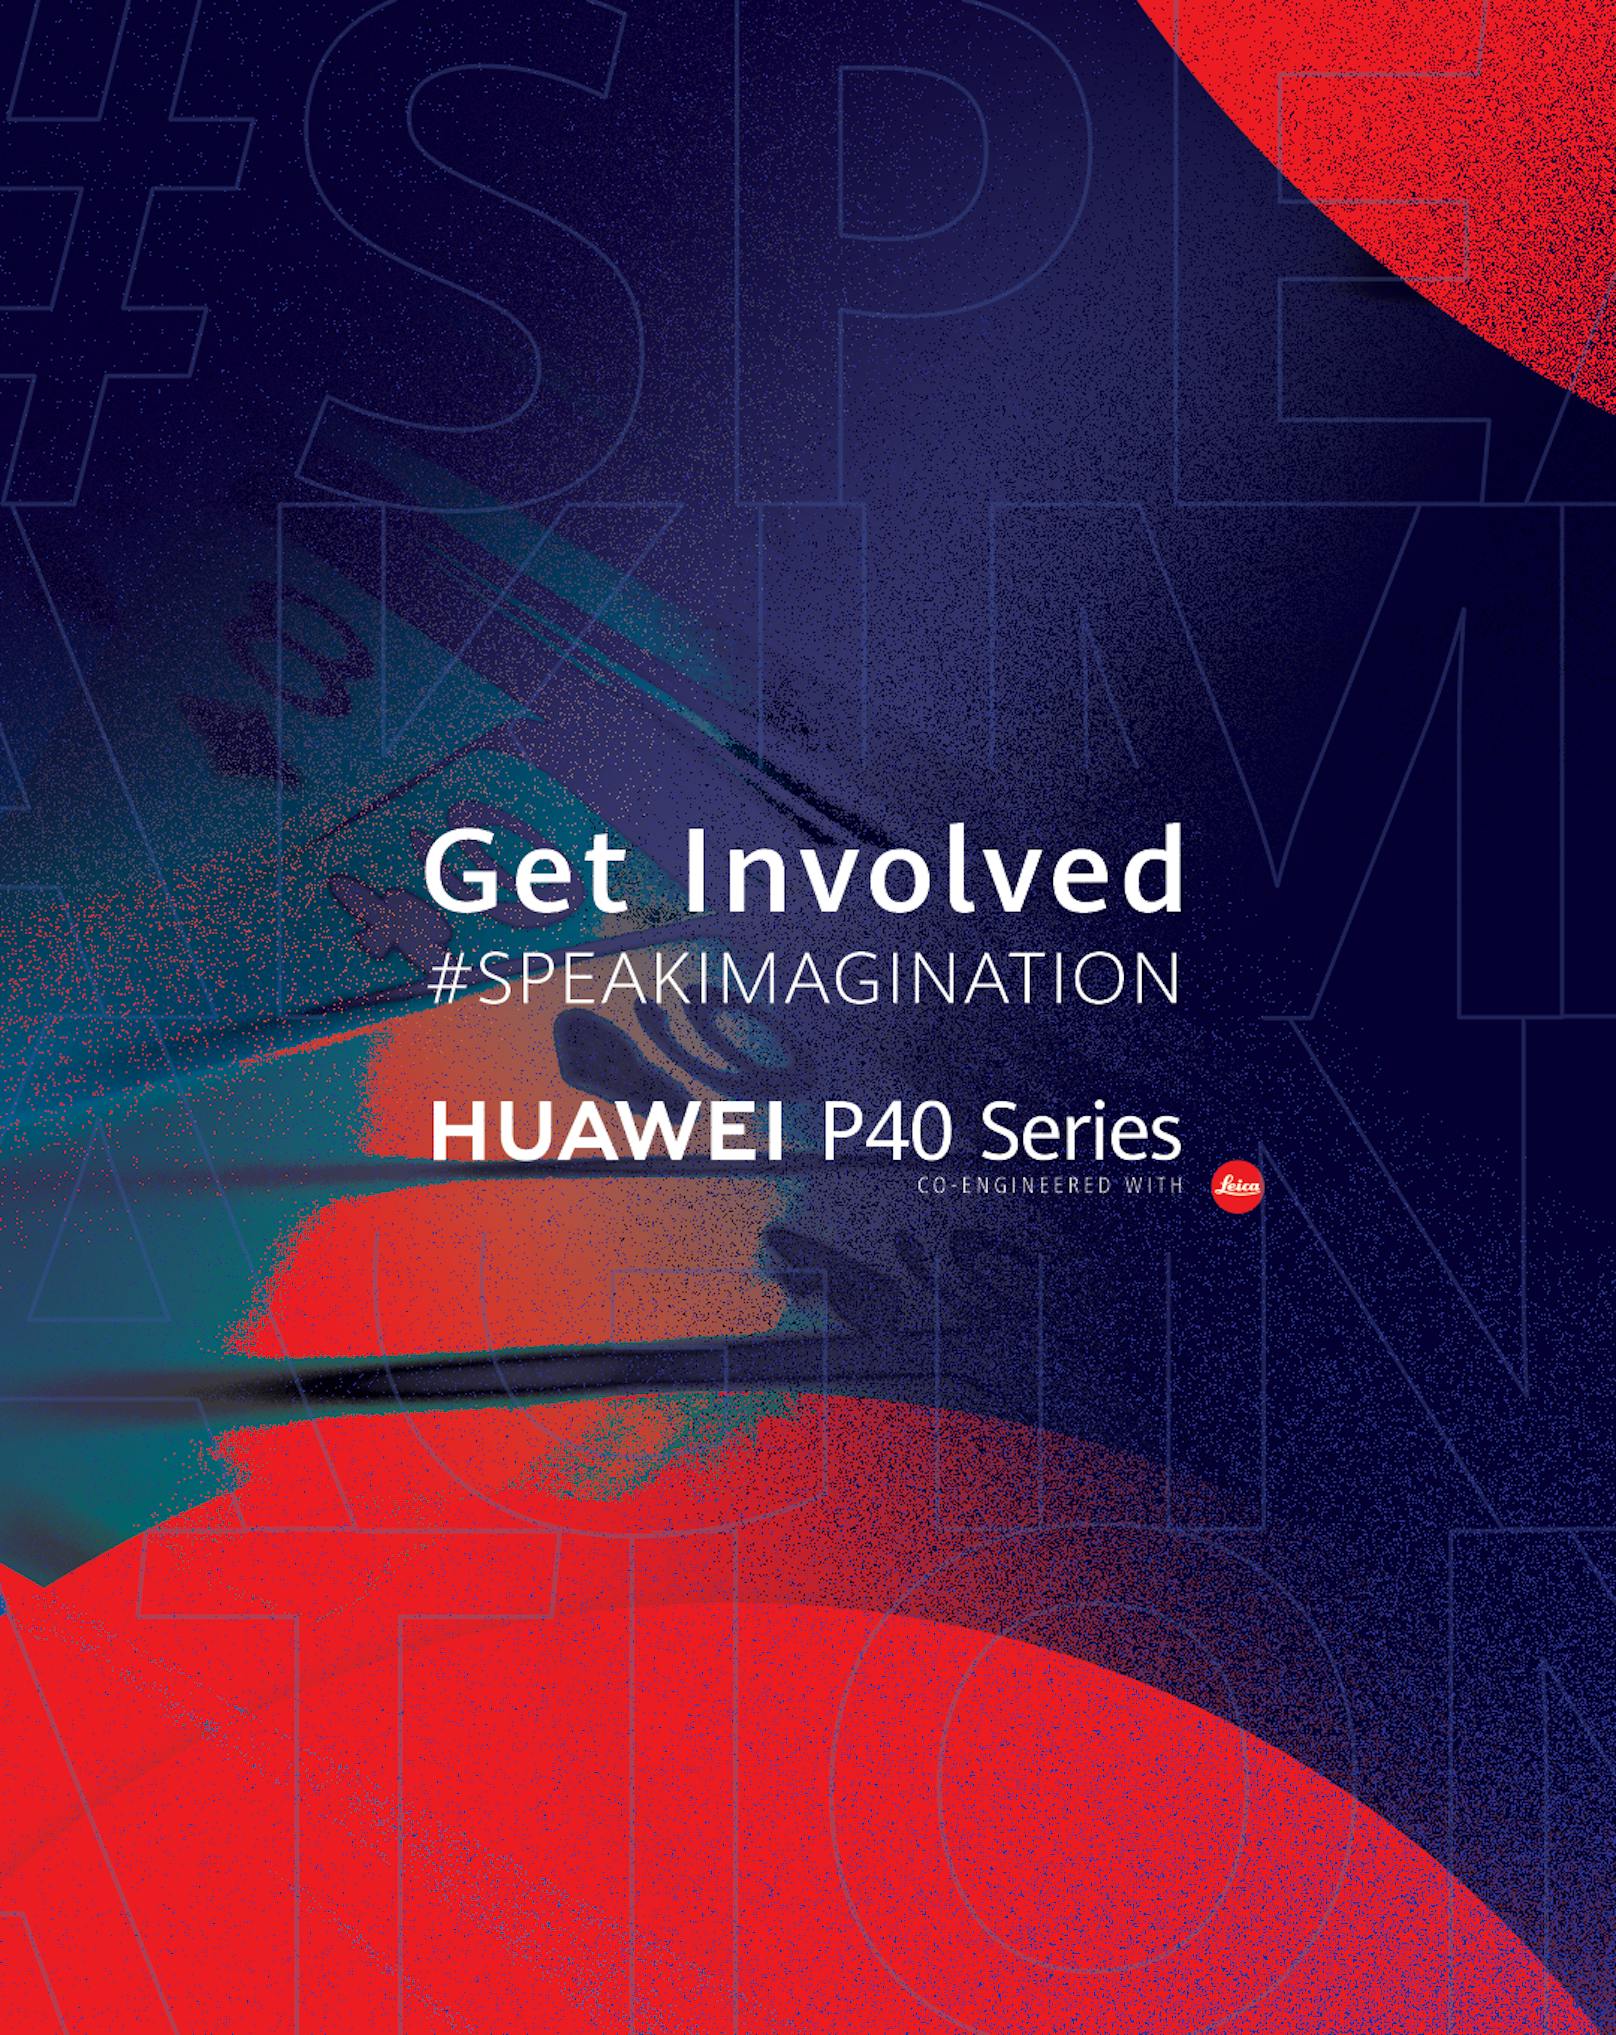 Speak Imagination: Mit Huawei bei der Entstehung eines neuen Werbespots mitwirken.